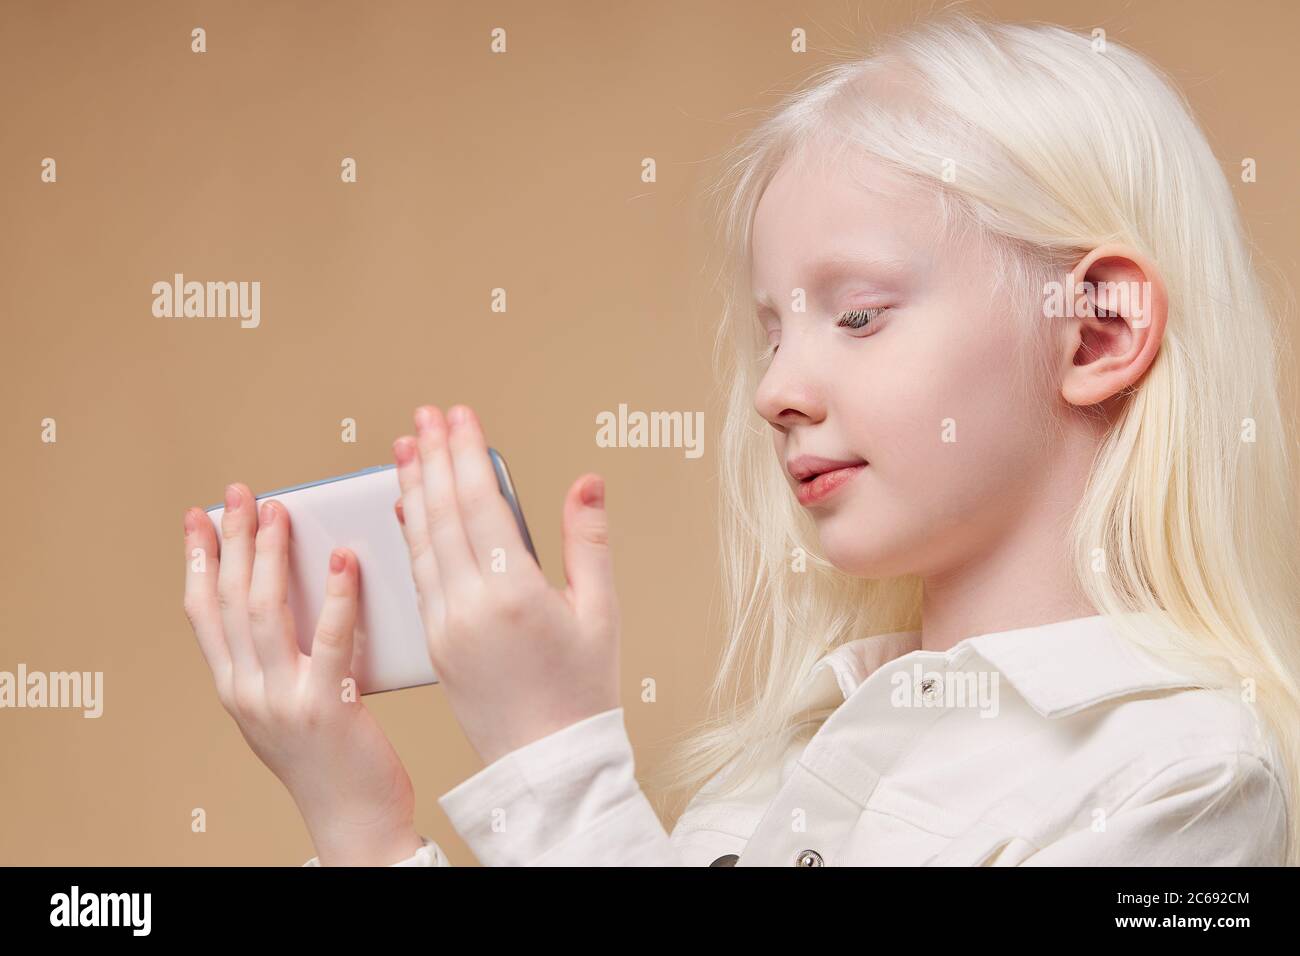 belle albino enfant tenant smartphone blanc dans les mains isolées, fille  avec cheveux blancs et peau regarder l'écran sur le téléphone mobile.  beauté inhabituelle de peo Photo Stock - Alamy